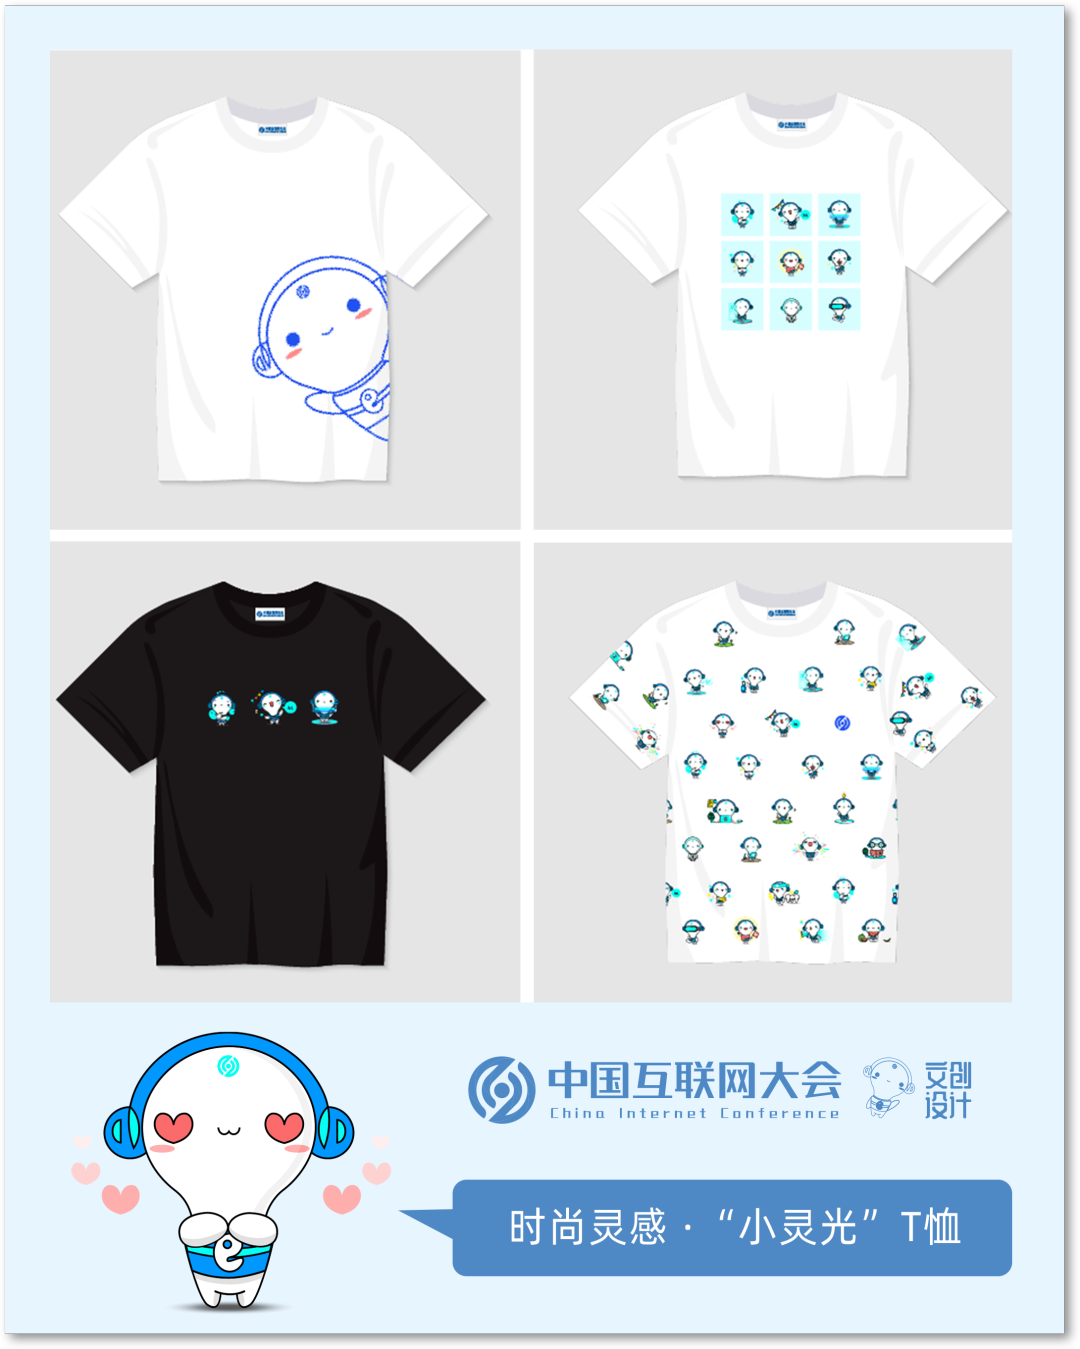 2022中国互联网大会 | 吉祥物“小灵光”系列文创产品上新！